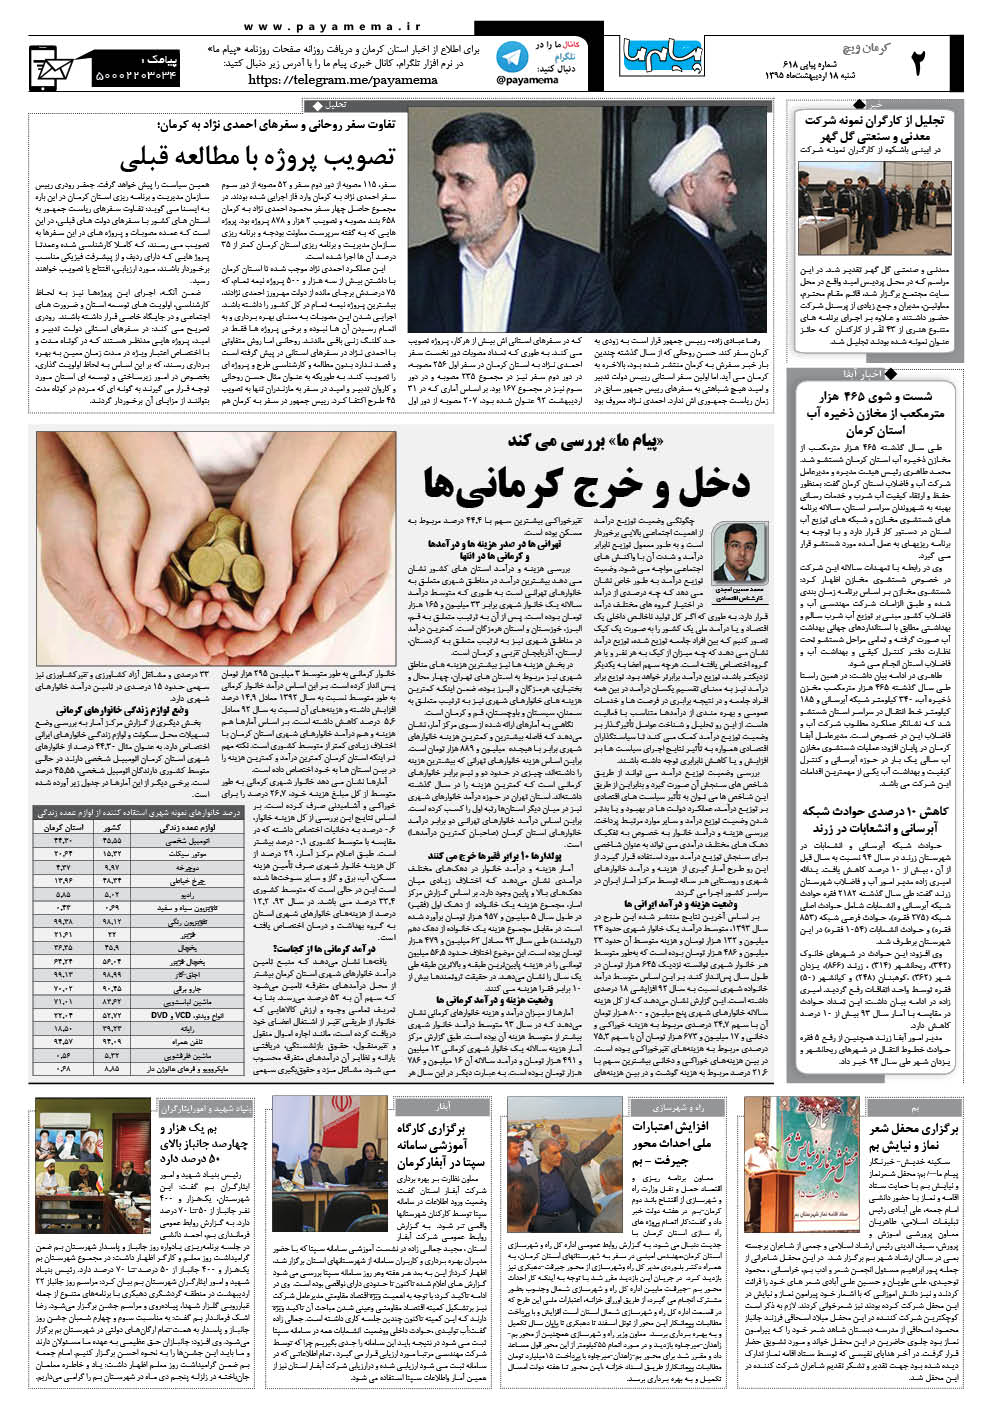 صفحه کرمان ویج شماره 618 روزنامه پیام ما